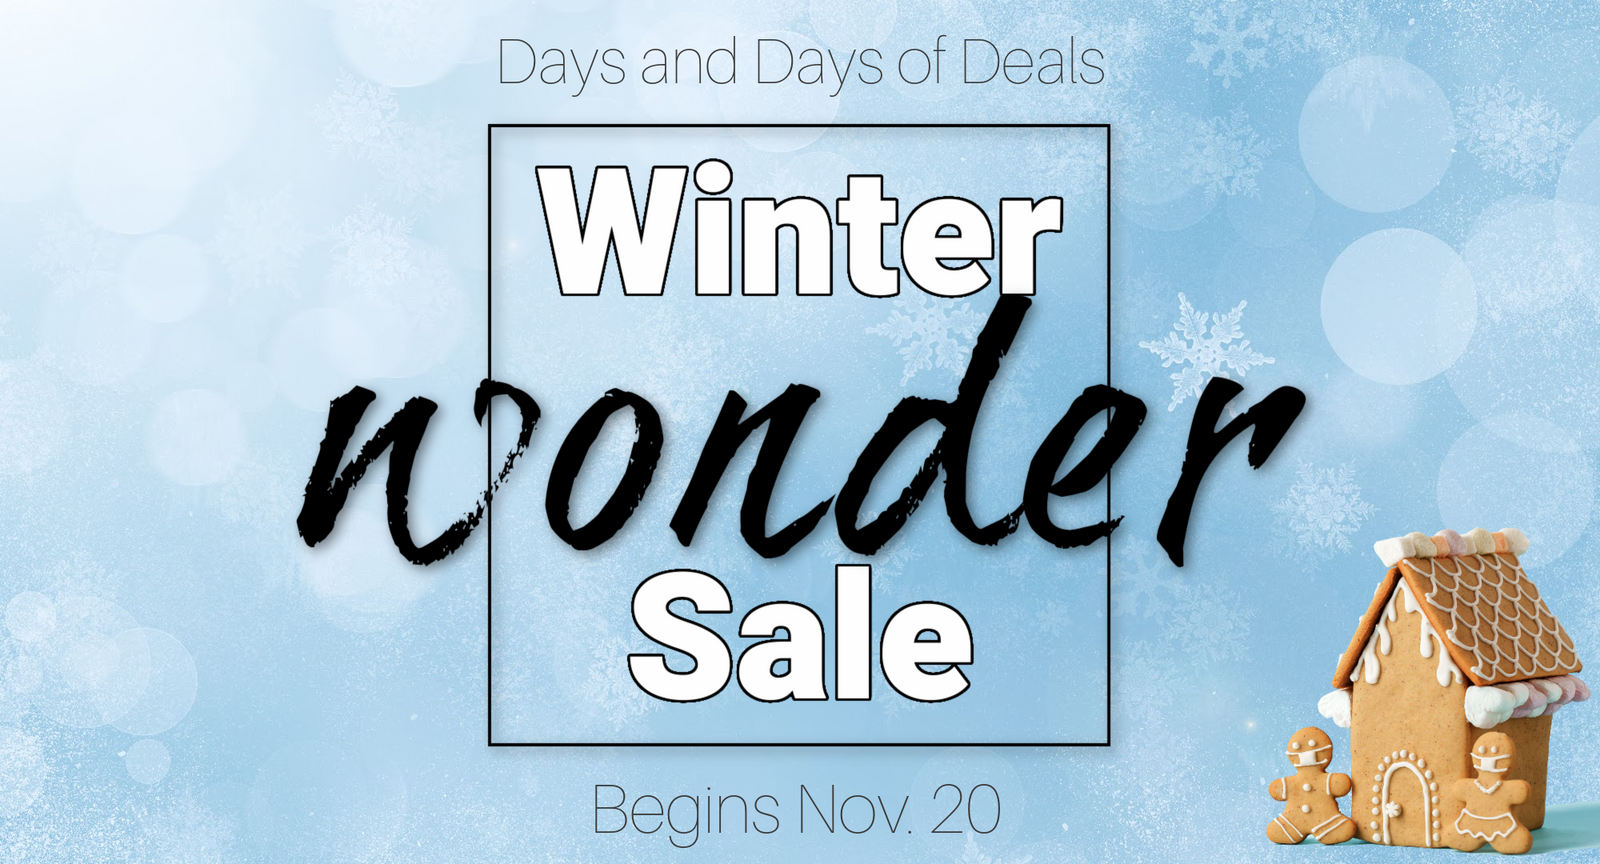 Winter Wonder Sale 2020